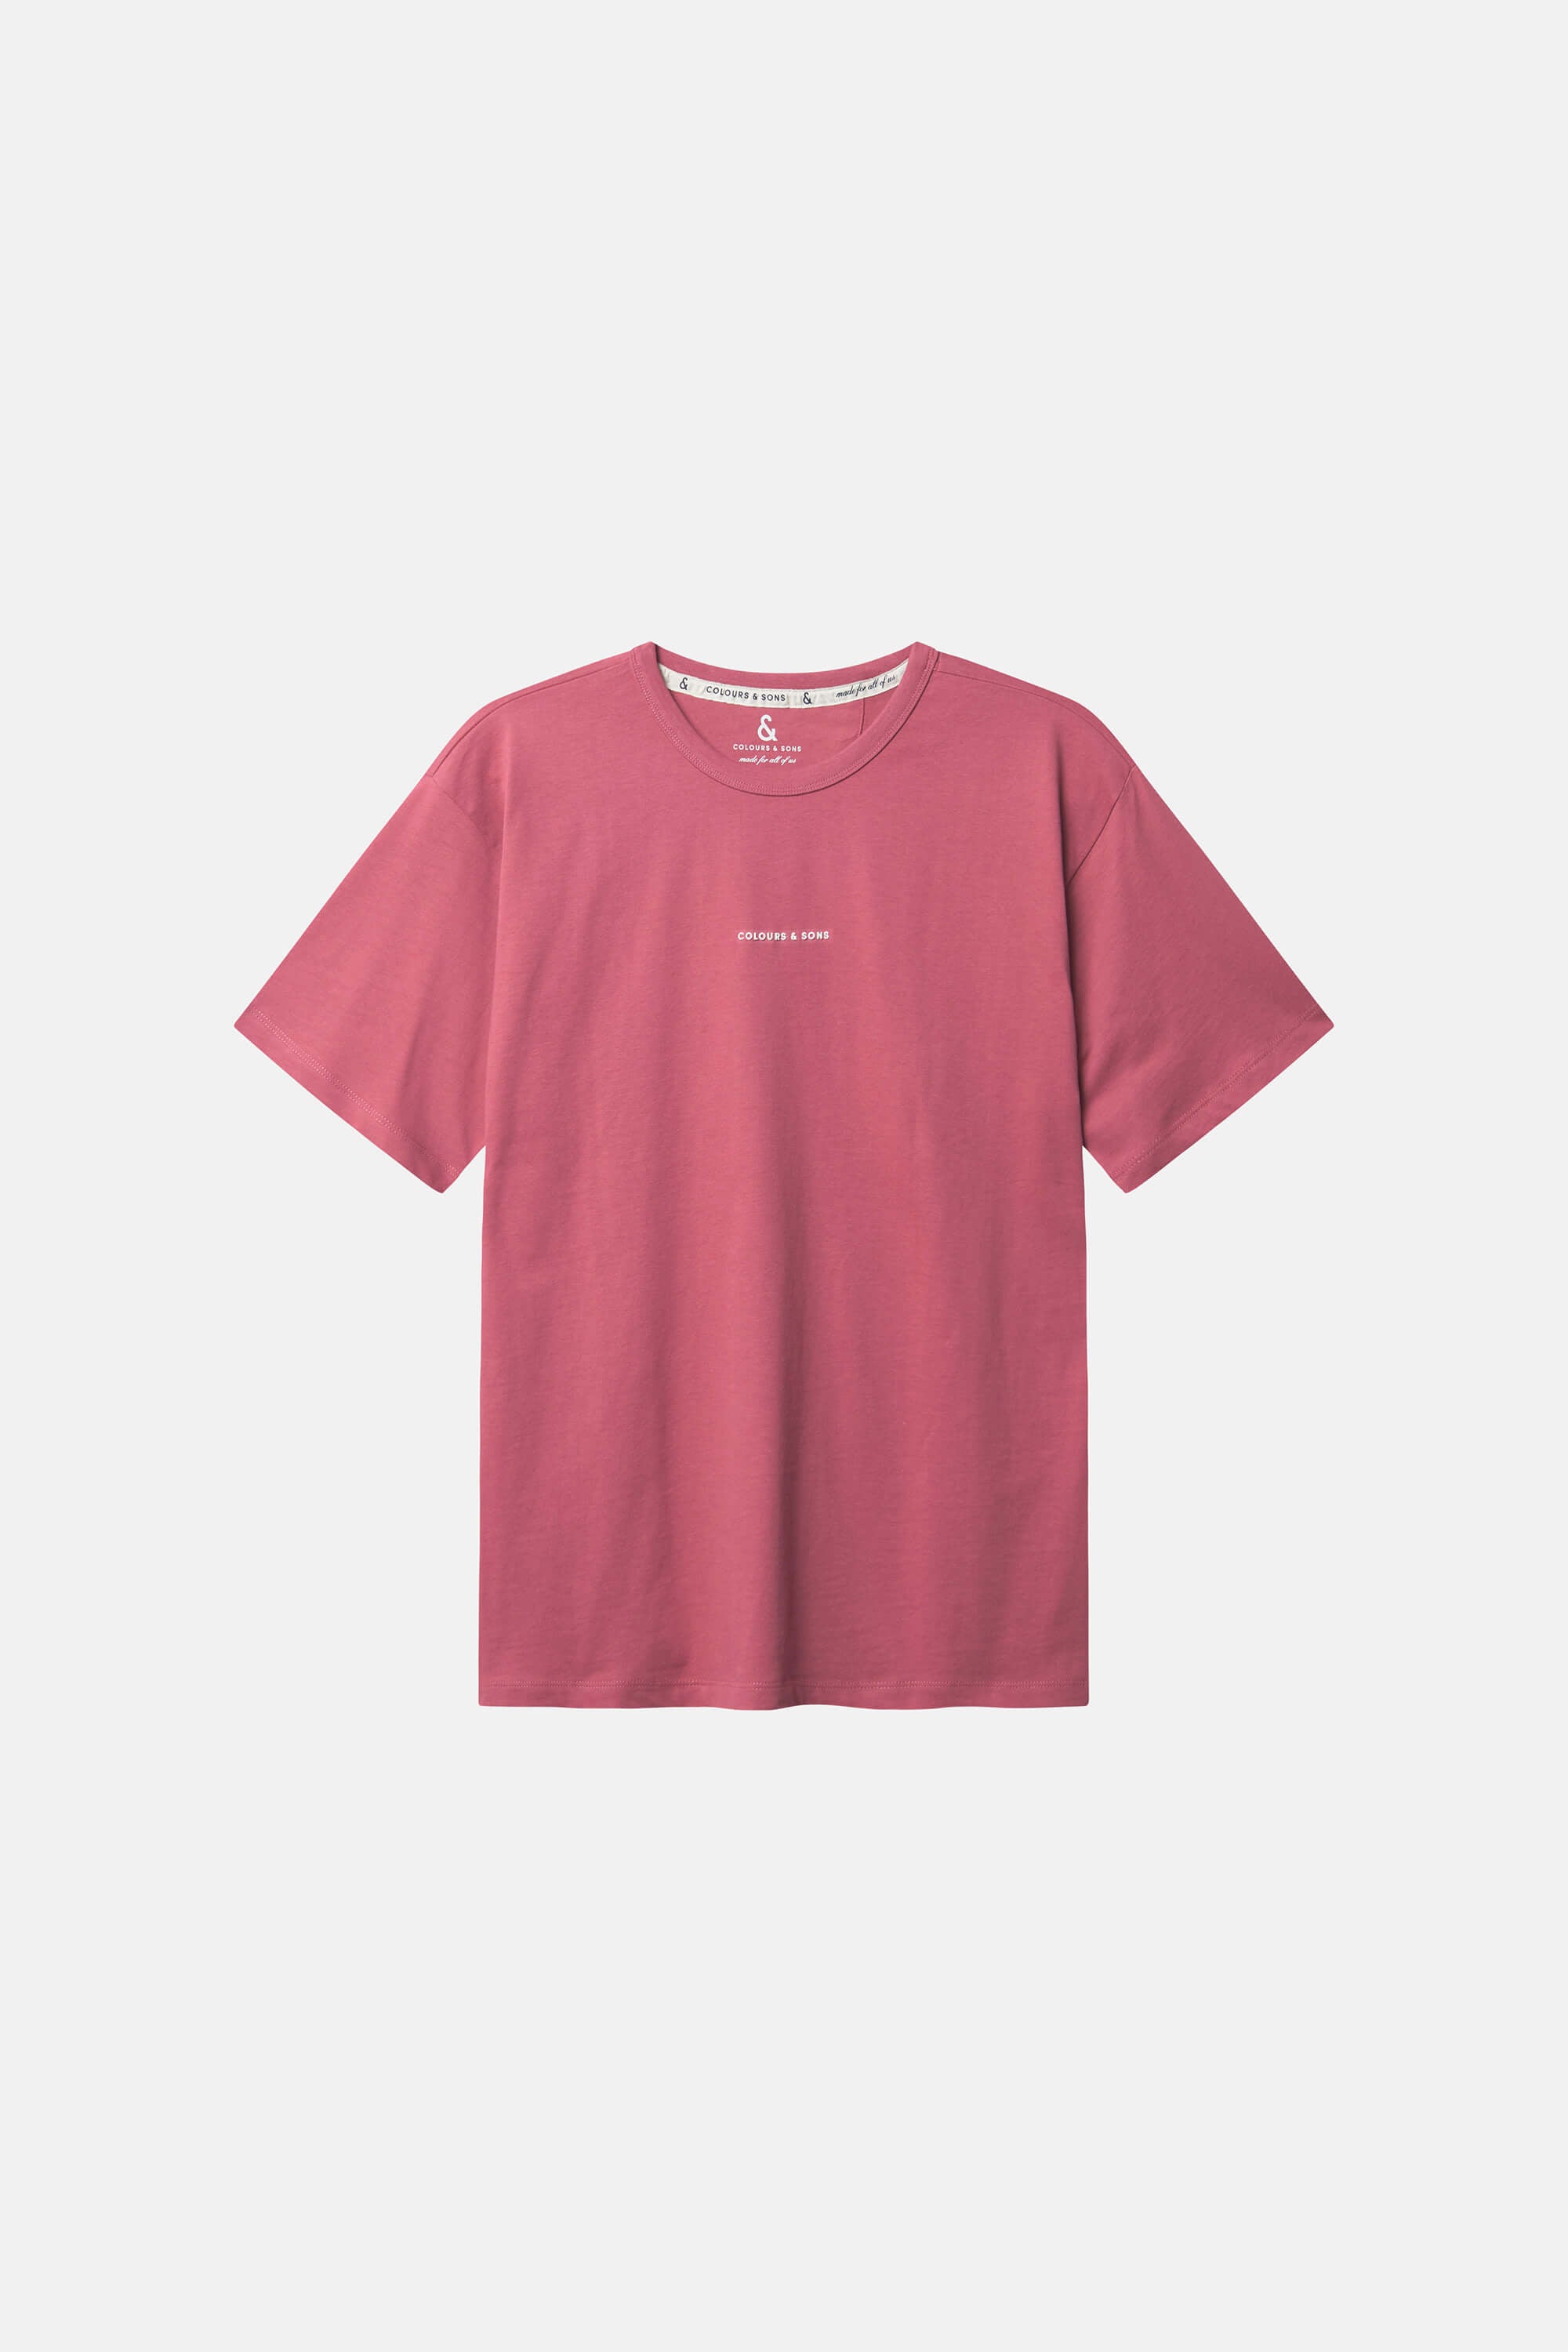 Herren T-Shirt, rosa, 100% Baumwolle von Colours & Sons